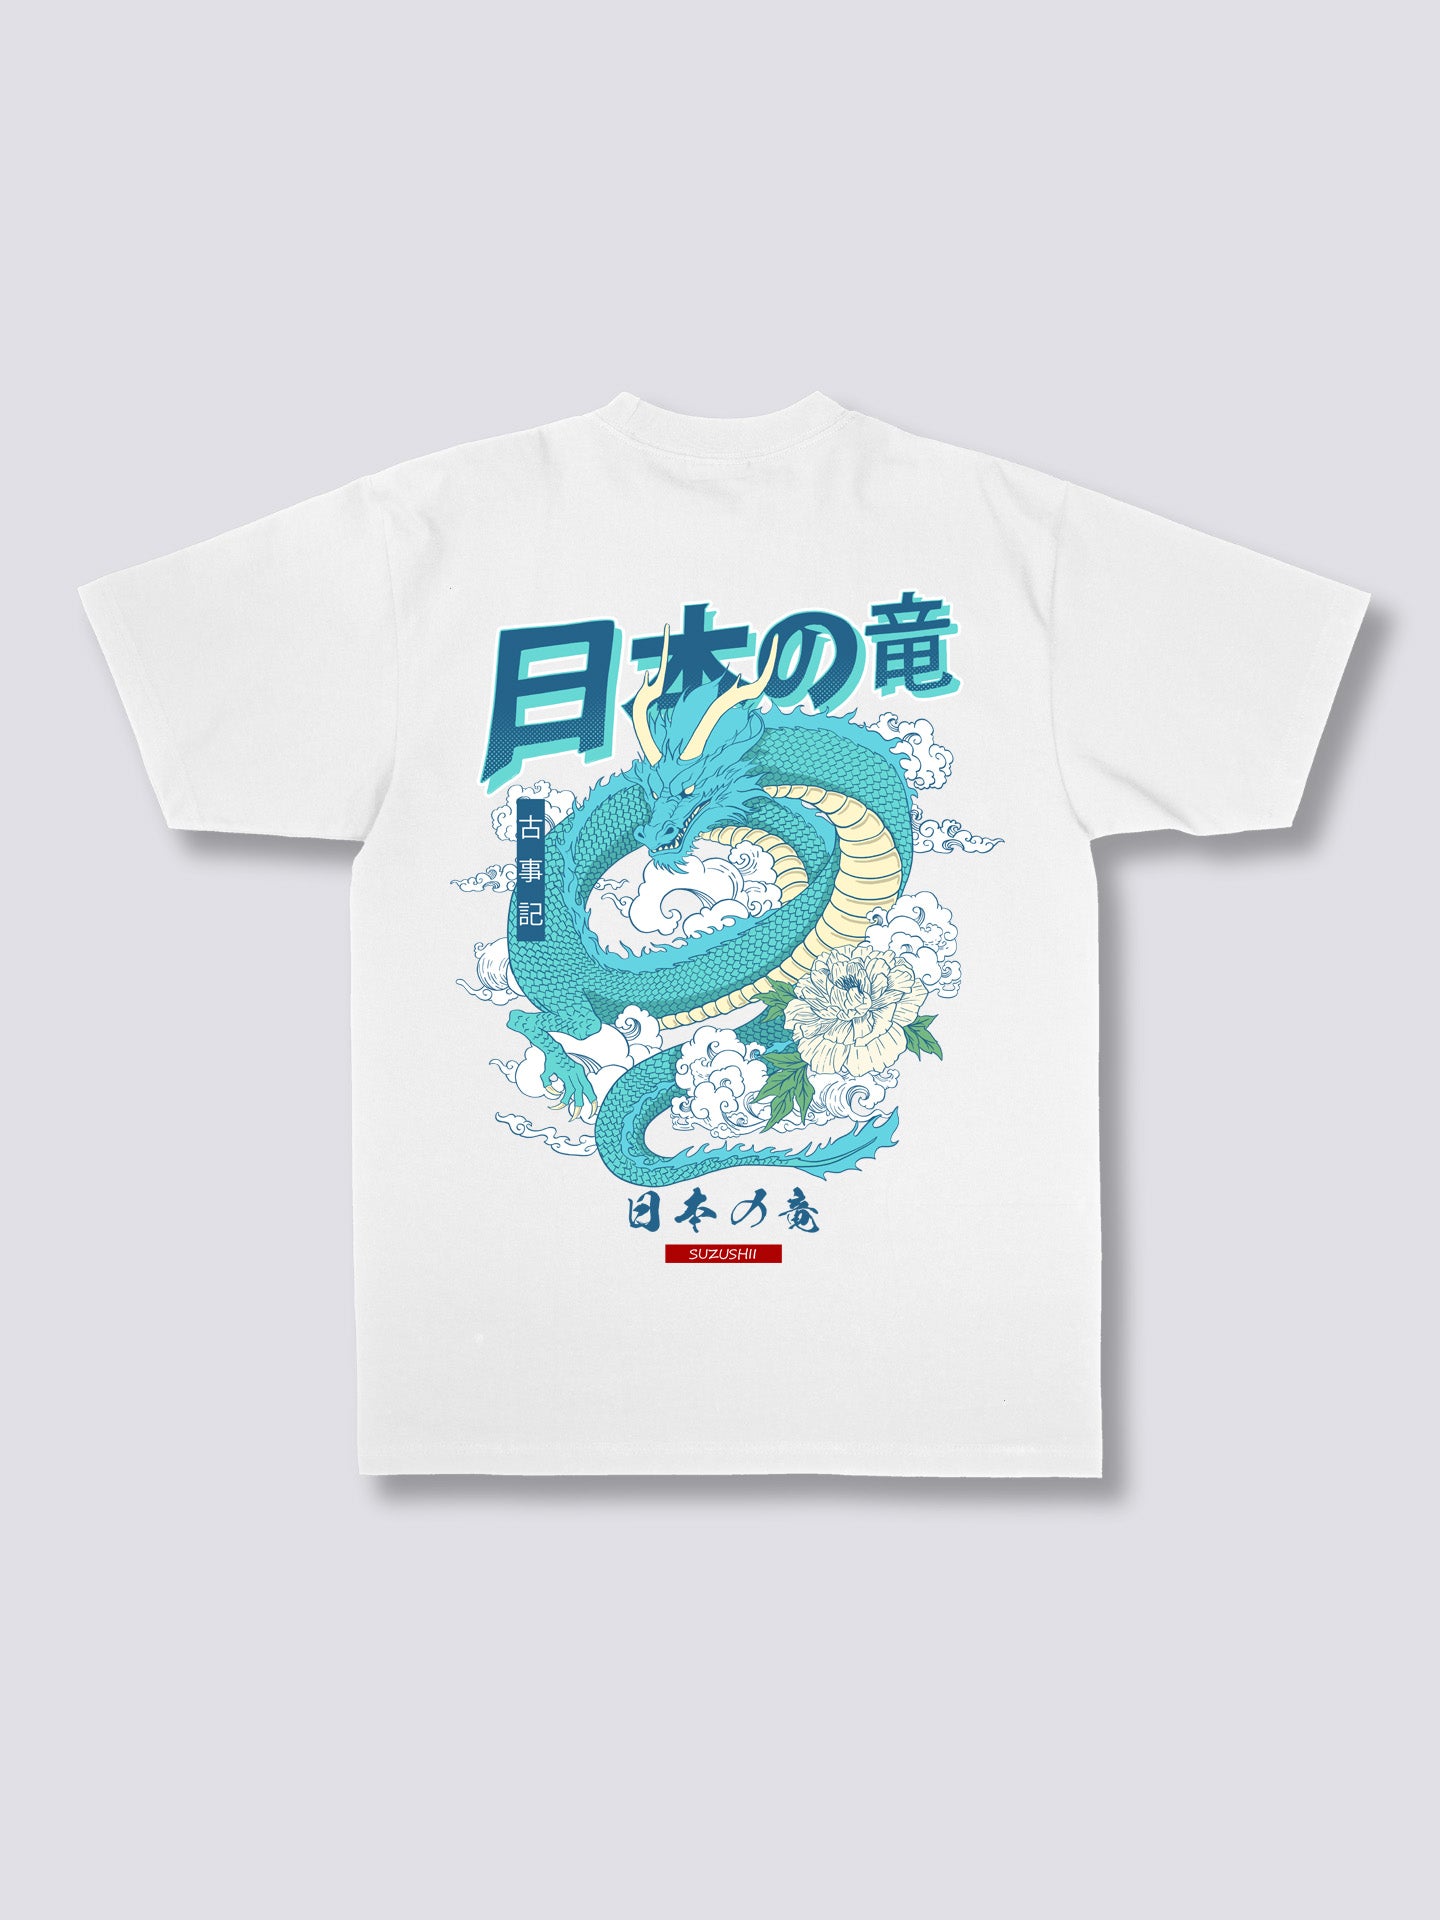 Japanese Dragon T-Shirt